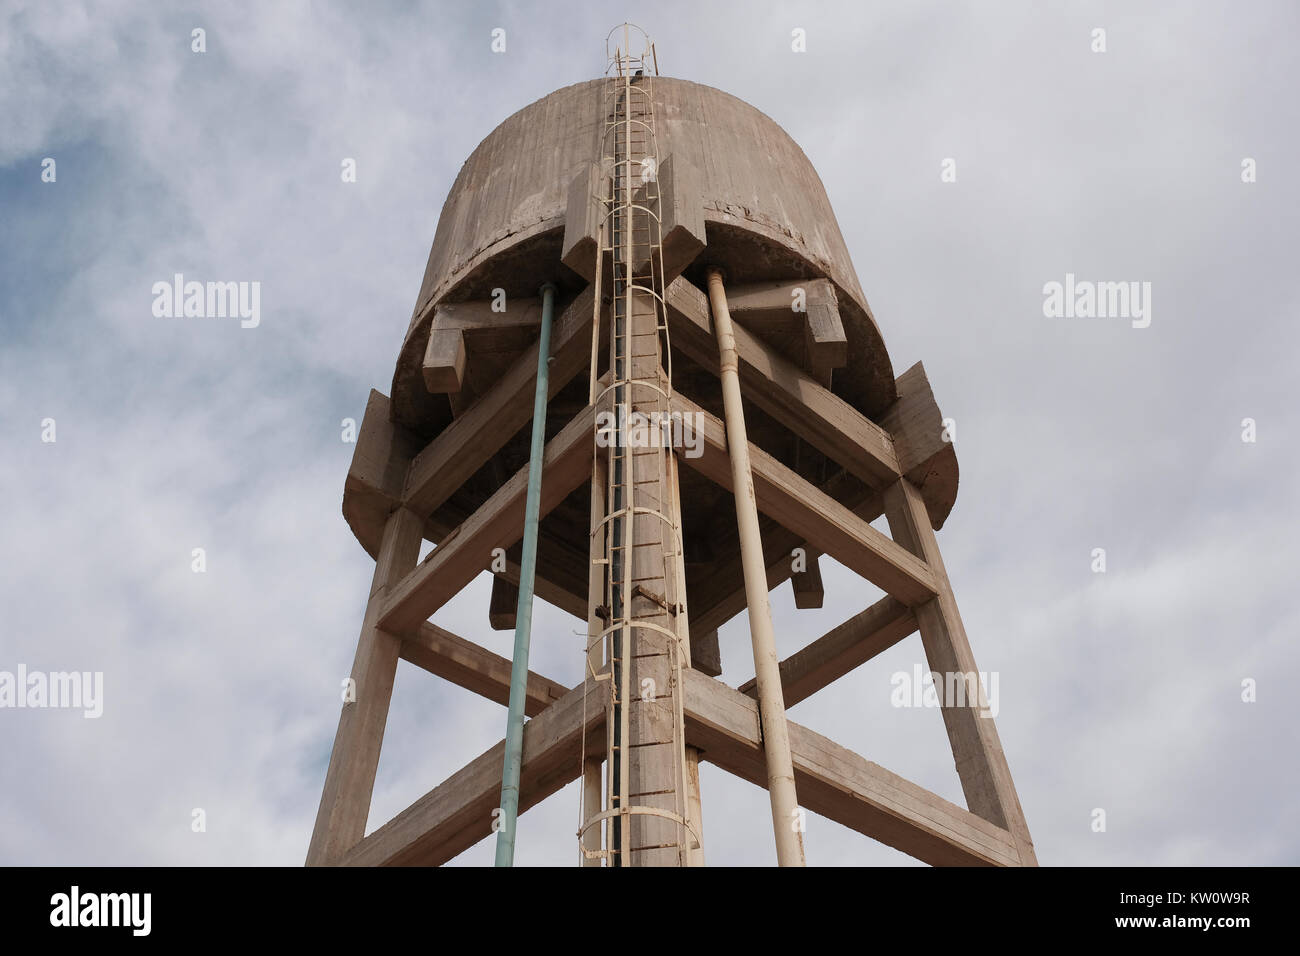 Alte Beton Wasserbehälter Turm in der landwirtschaftlichen Gemeinschaft von Hatzeva in der westlichen auf dem Blachfelde Tal in Hebräisch bekannt als Arava oder Aravah, die Teil der Grenze zwischen Israel und Jordanien. Stockfoto